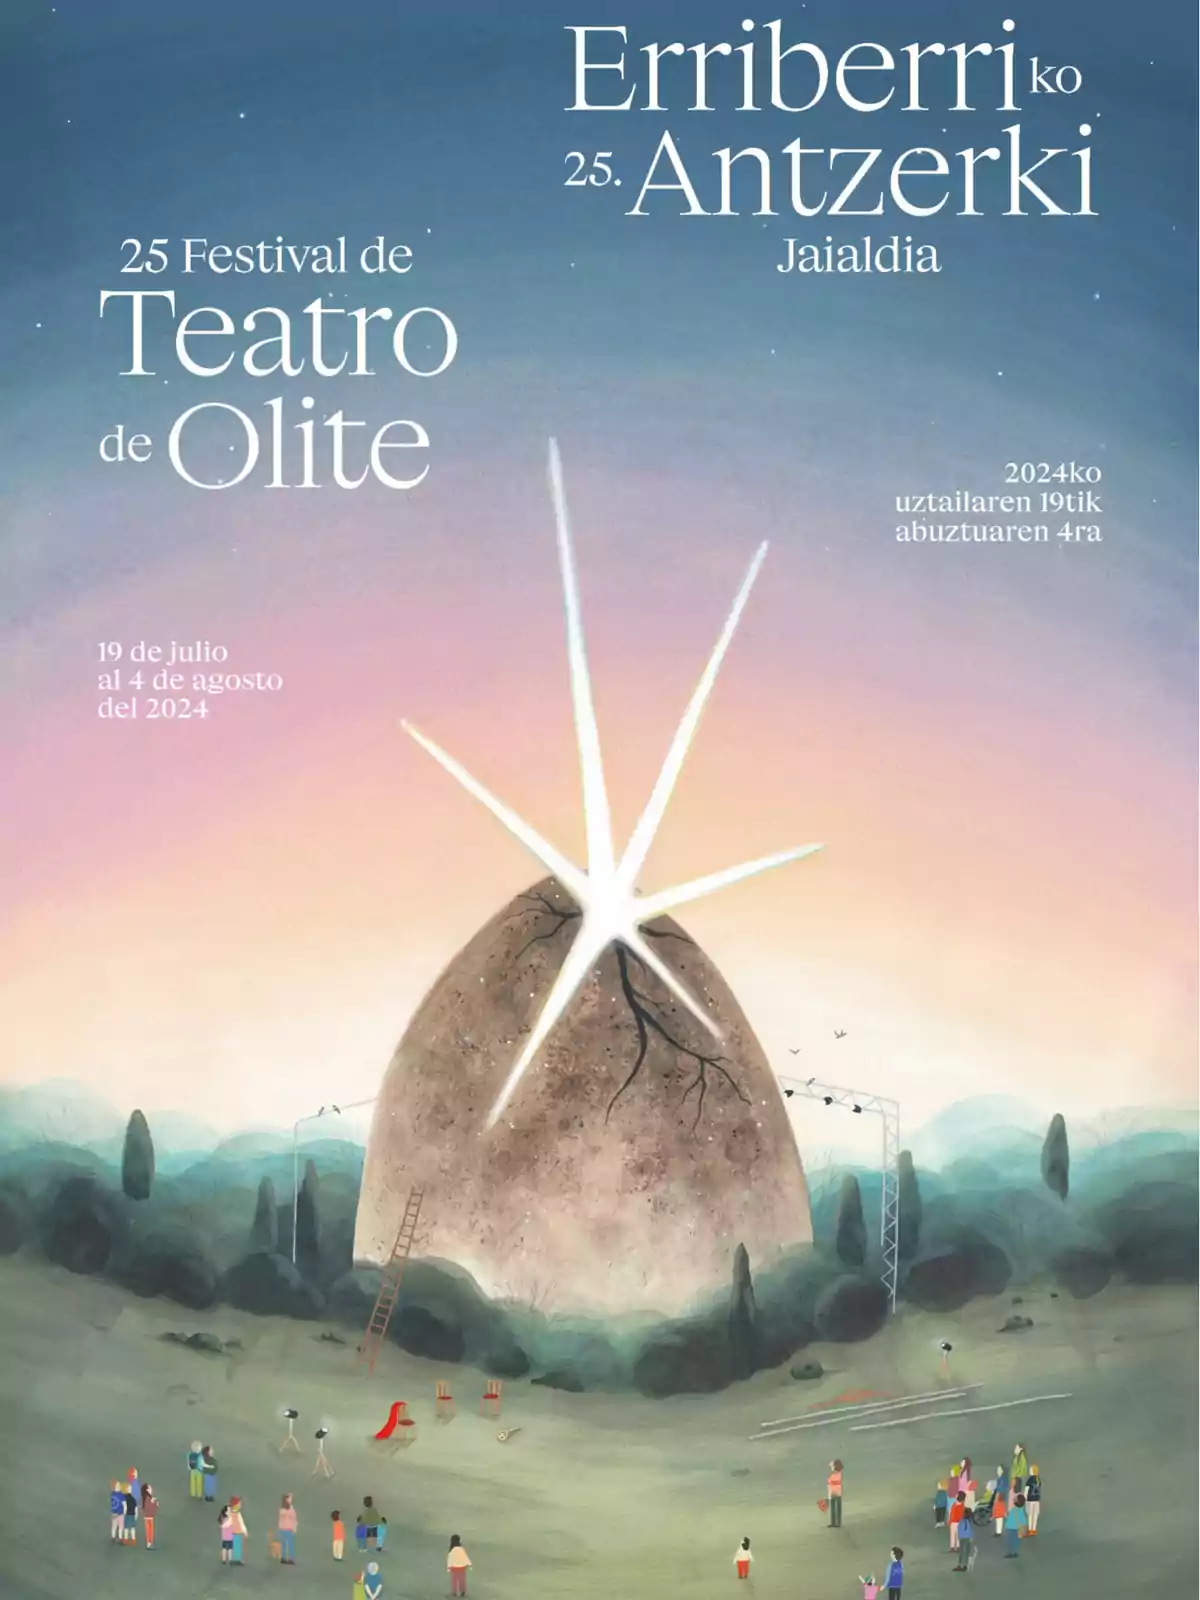 Cartel del 25 Festival de Teatro de Olite, con una ilustración de un gran huevo roto del que emerge una luz brillante, rodeado de personas y árboles, con fechas del 19 de julio al 4 de agosto del 2024.